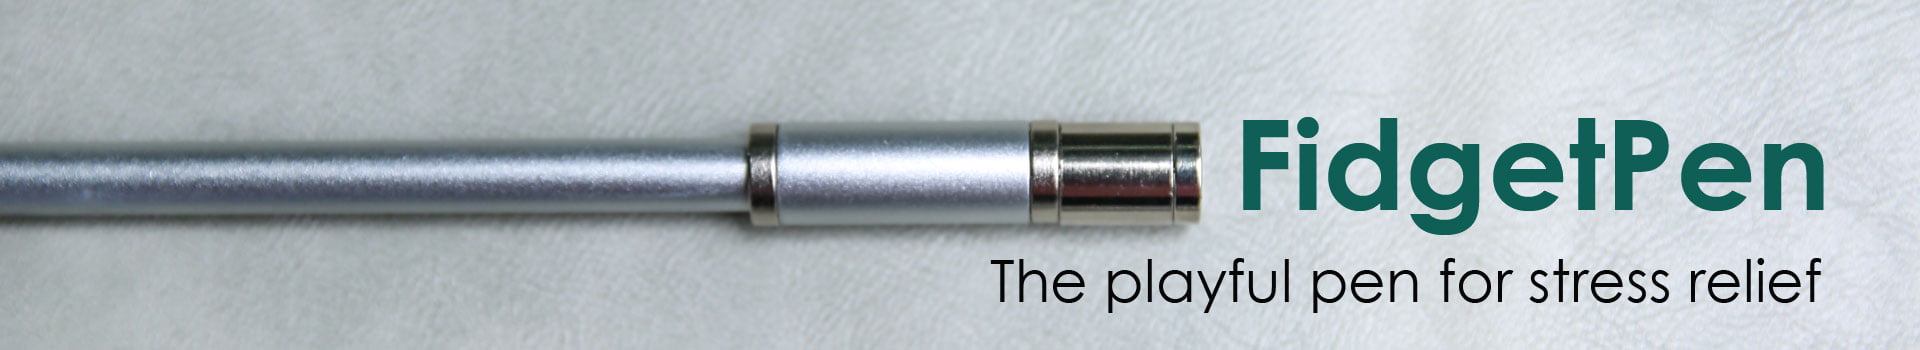 Αντιστρές στυλό FidgetPen της Allocacoc - γκρι - με μελάνι που διαγράφεται. geekers.gr